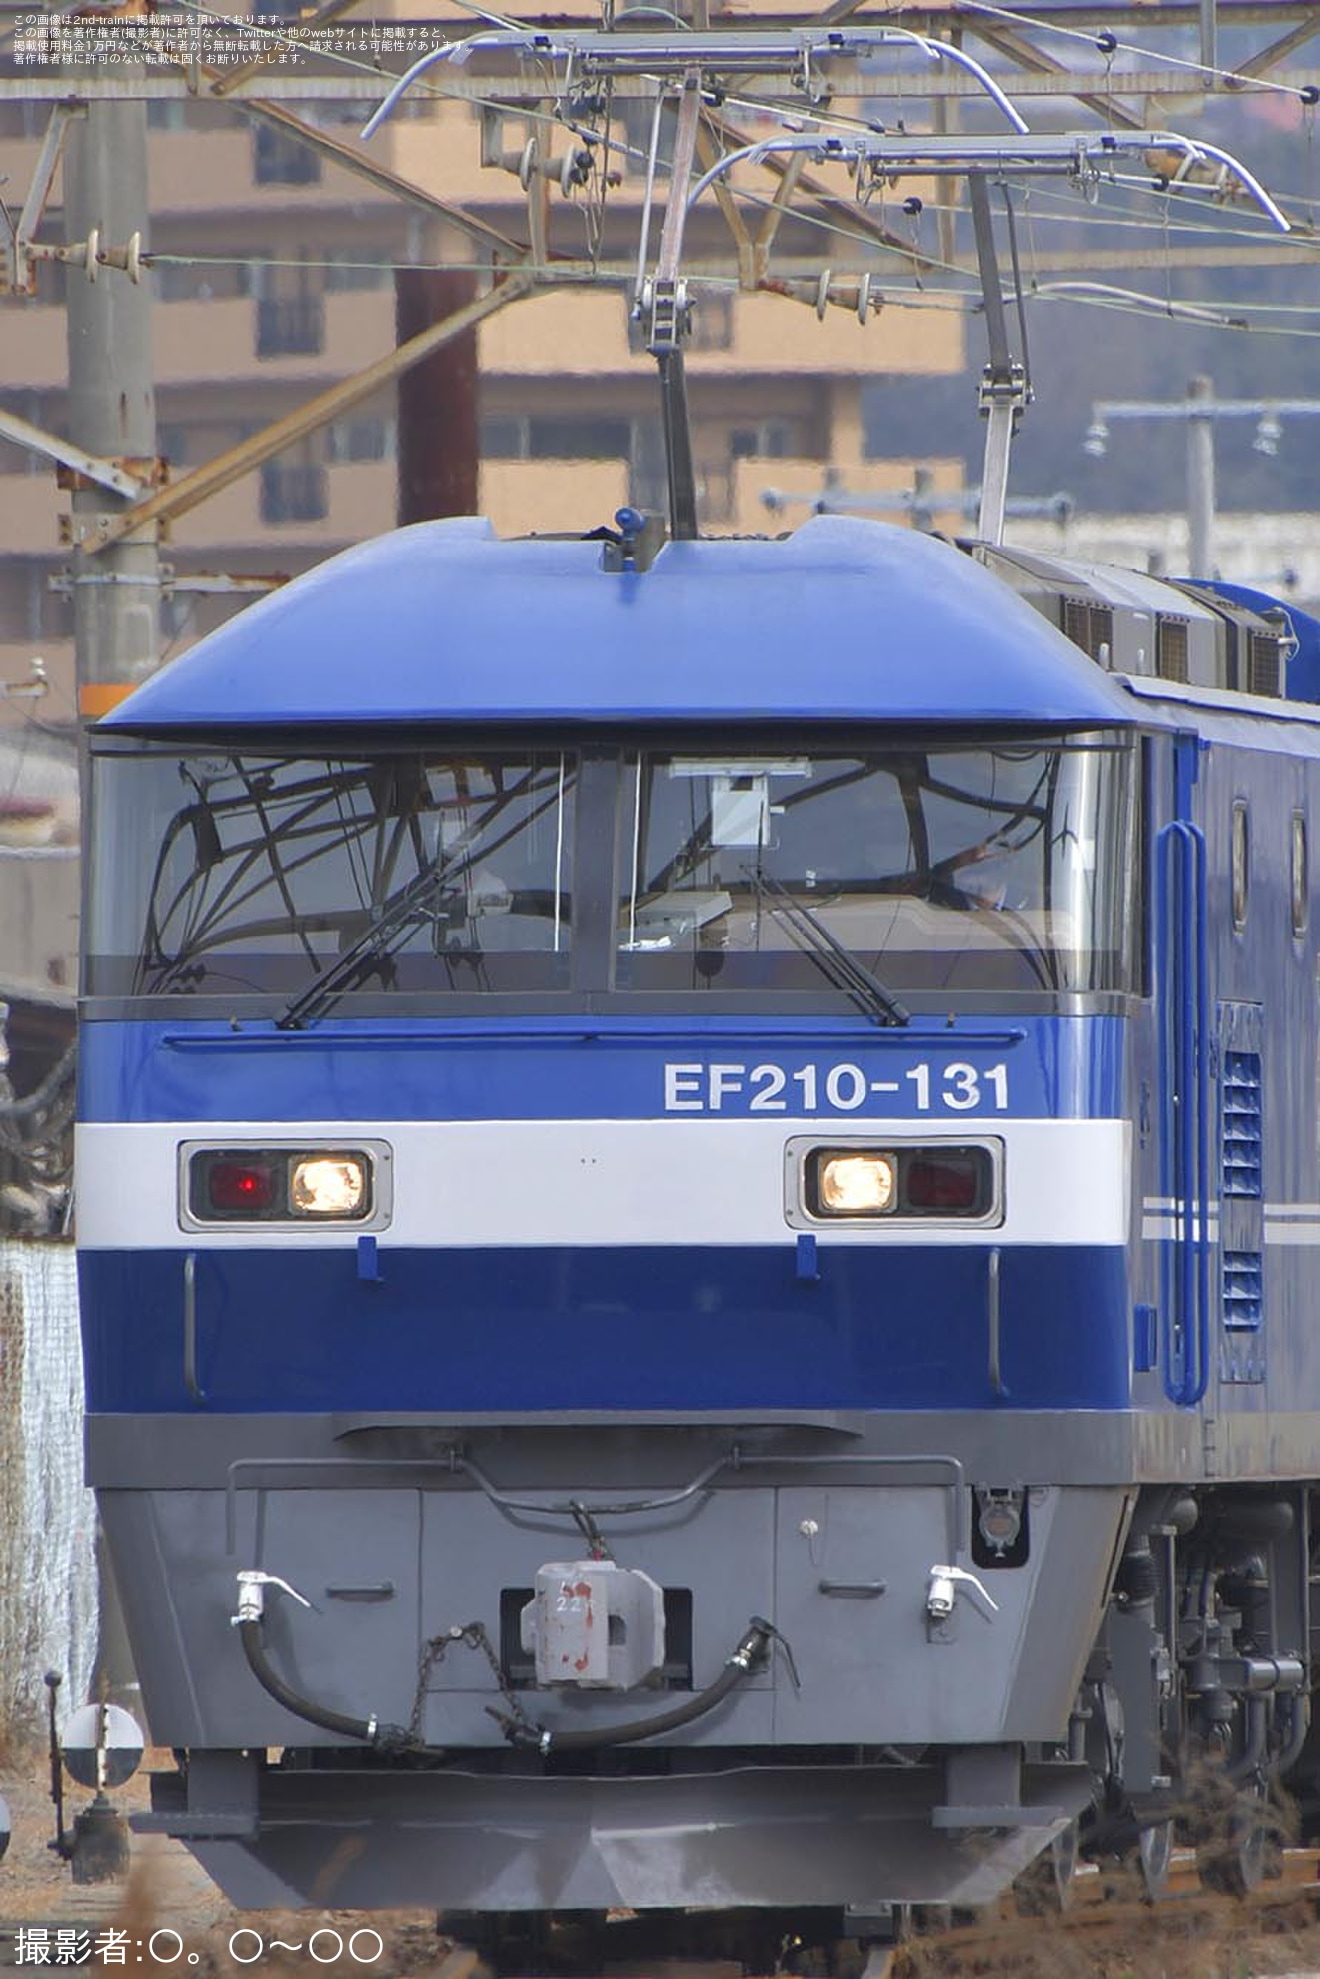 【JR貨】EF210-131(新塗装化)広島車両所構内試運転の拡大写真